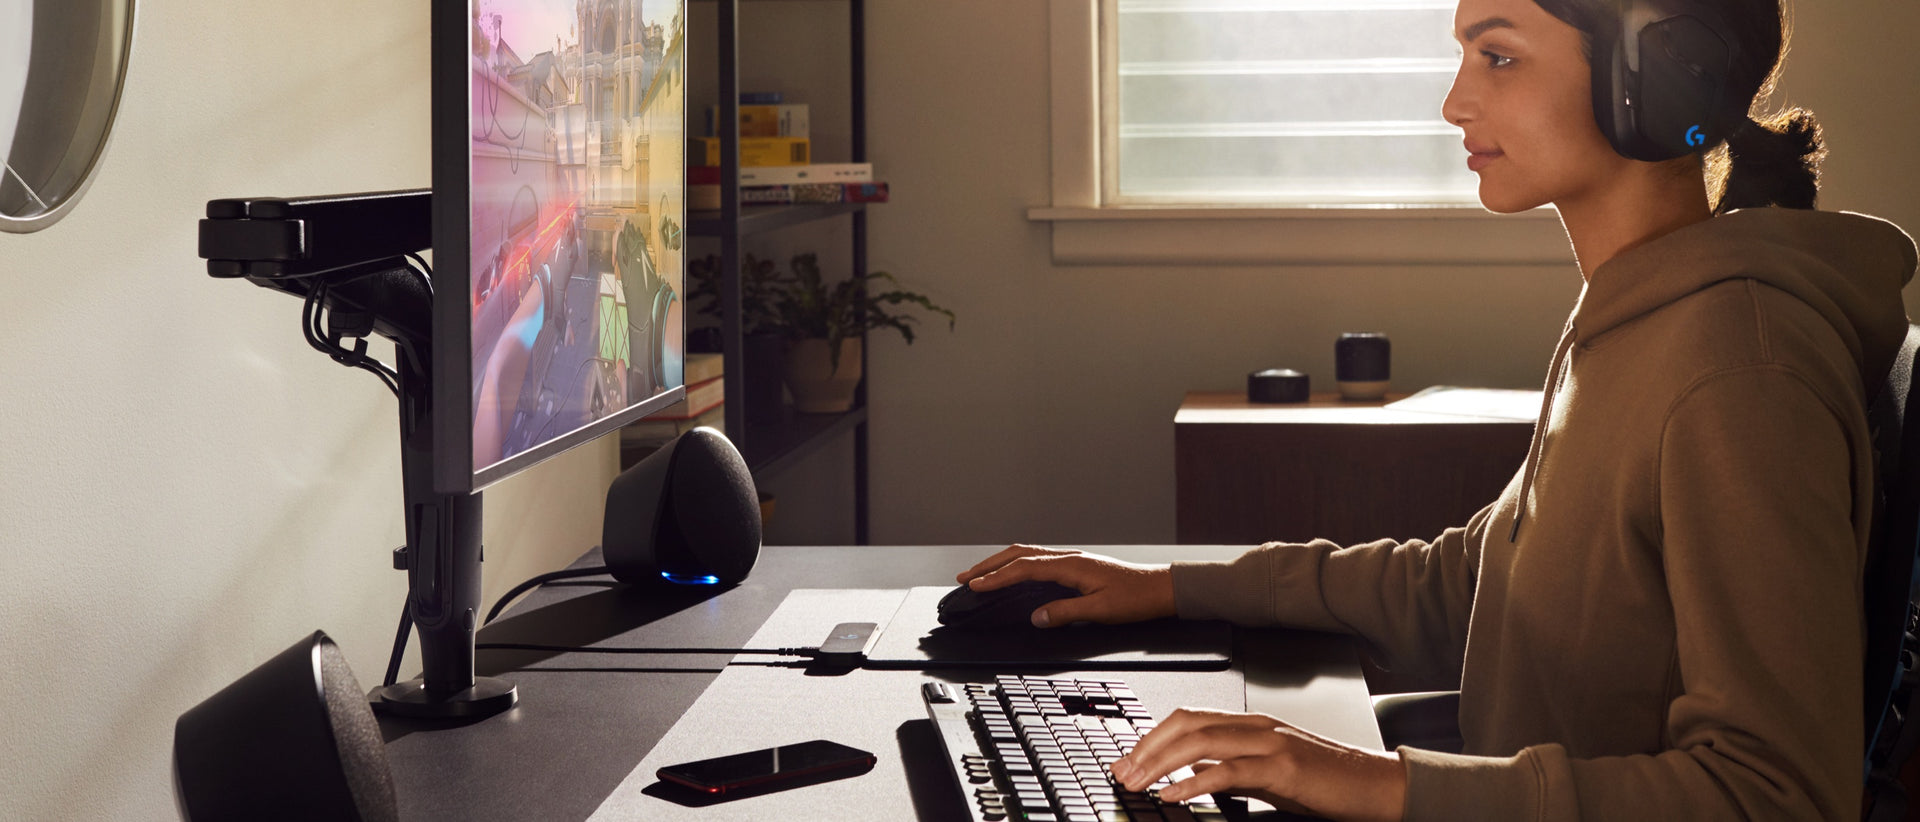 Una mujer con una sudadera con capucha y auriculares tiene una mano en el ratón y otra en el teclado mientras mira al monitor montado al brazo articulado para monitor Ollin.